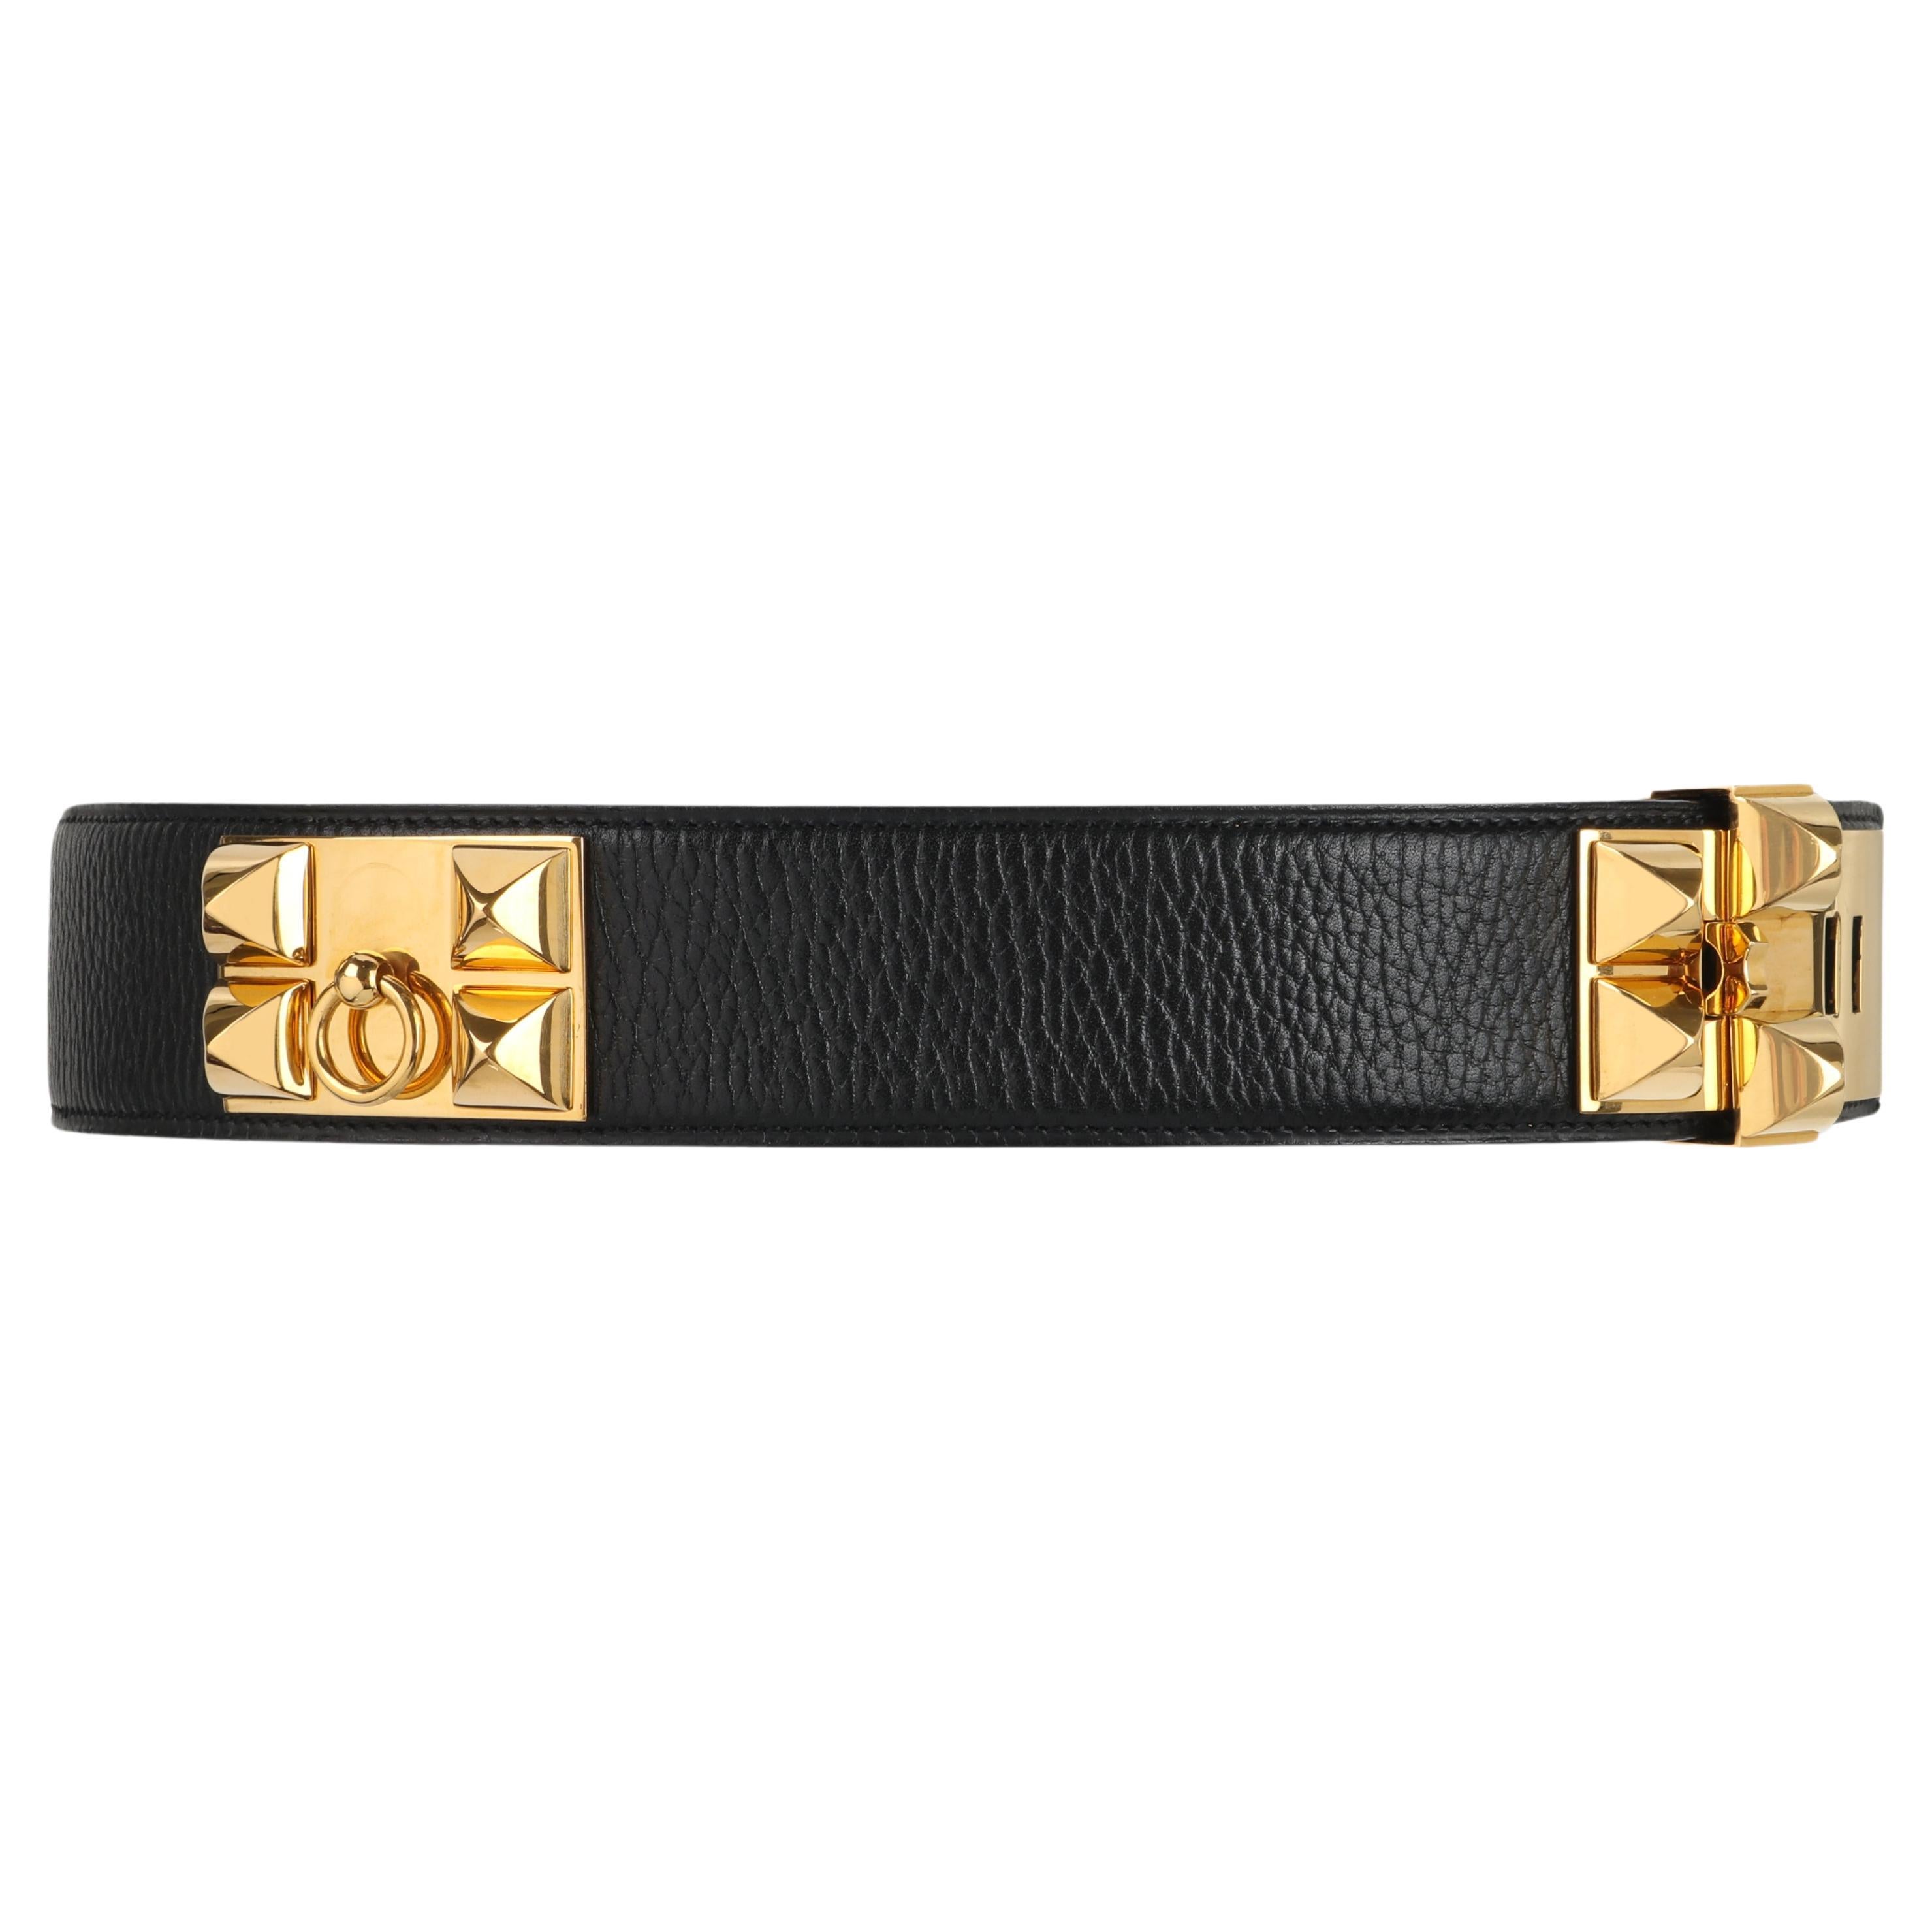 HERMES c.2006 "Collier de Chien" Black Gold Leather Studded Adjustable Belt For Sale